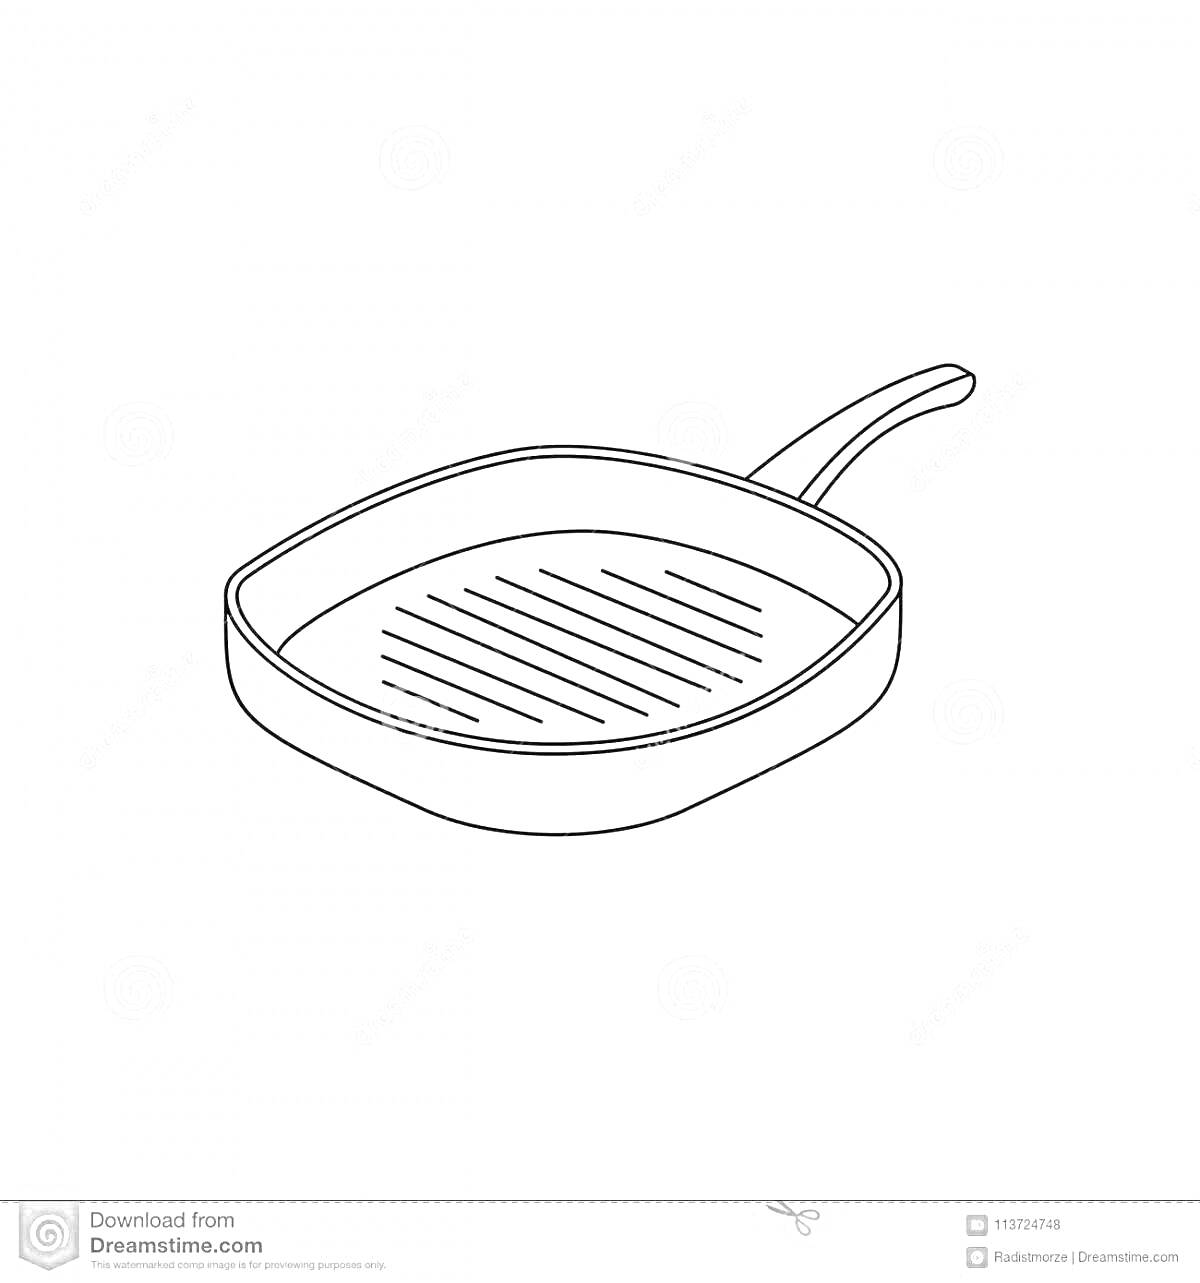 На раскраске изображено: Сковорода, Кухонная утварь, Рукоятка, Дети 3-4 года, Кухня